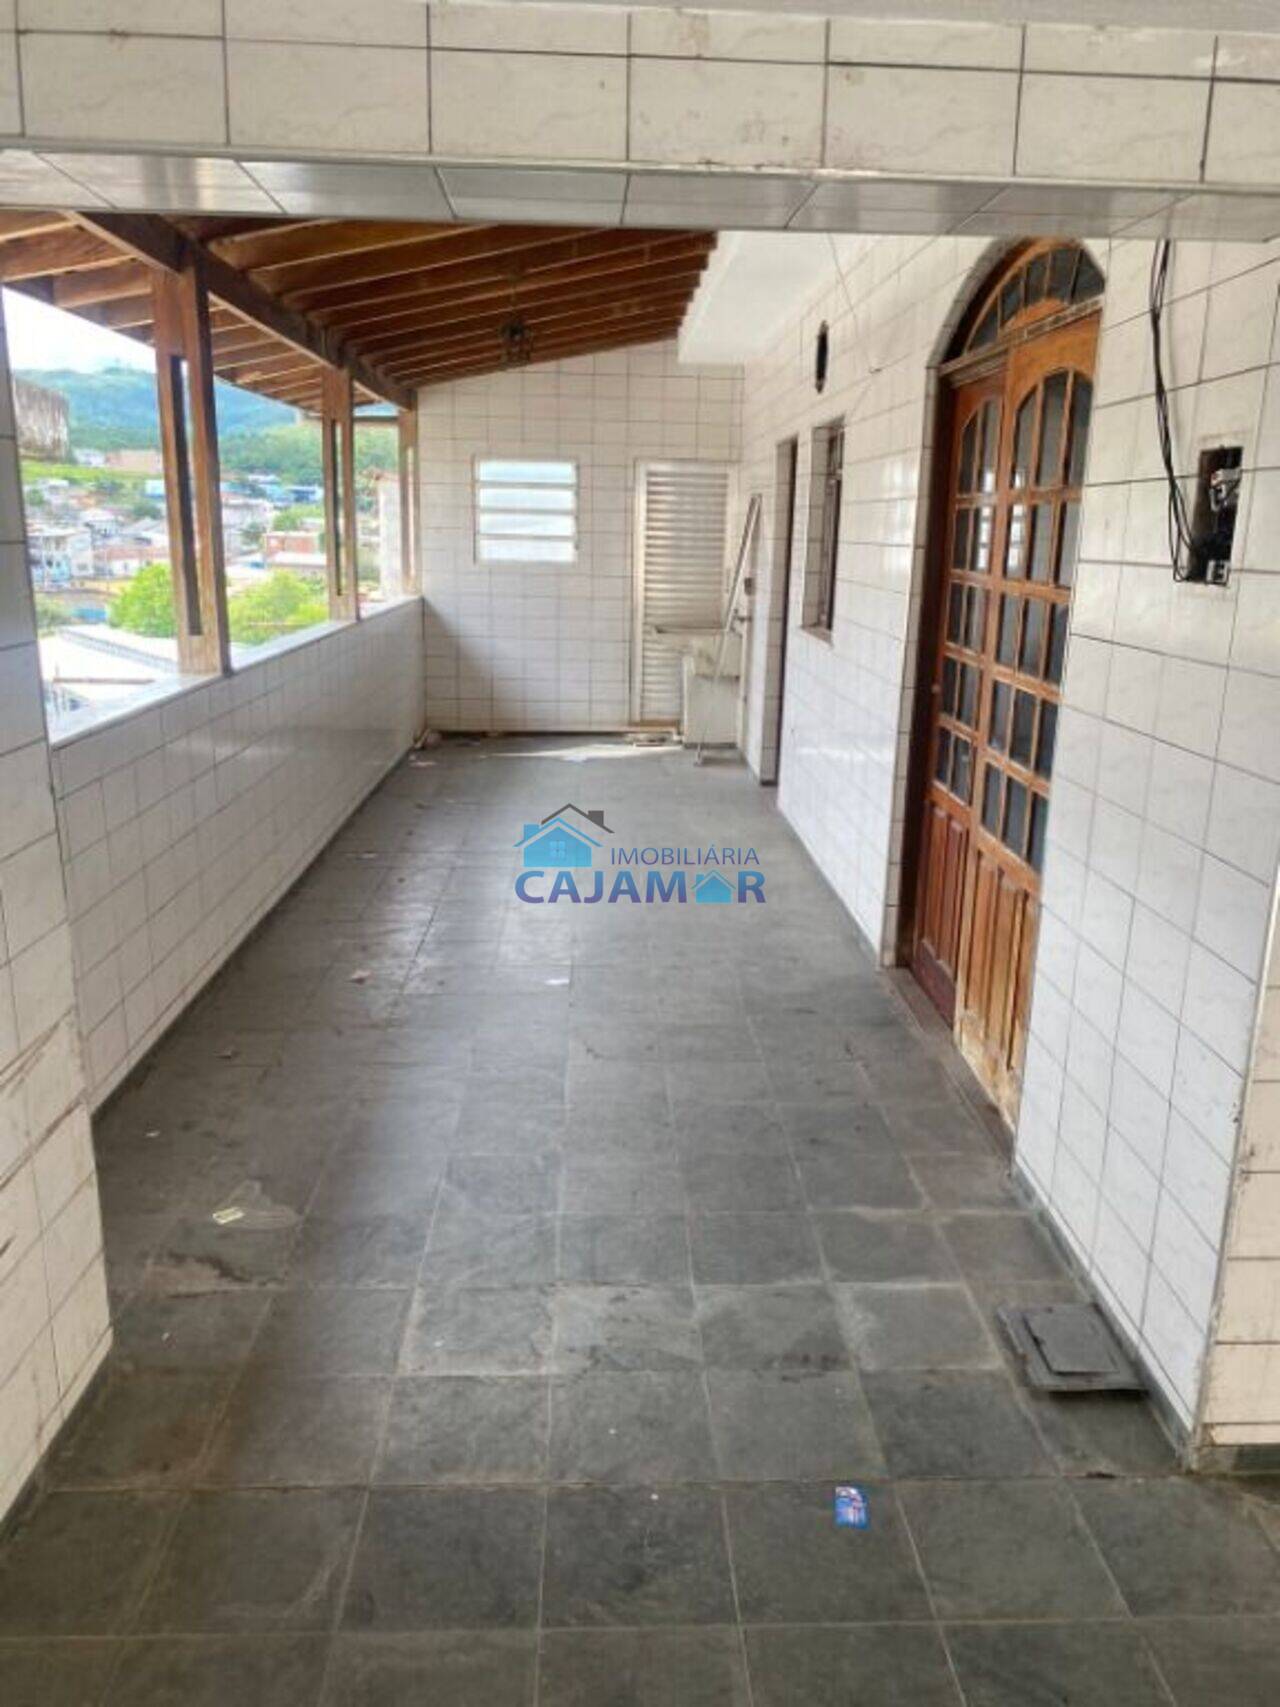 Casa Centro, Cajamar - SP